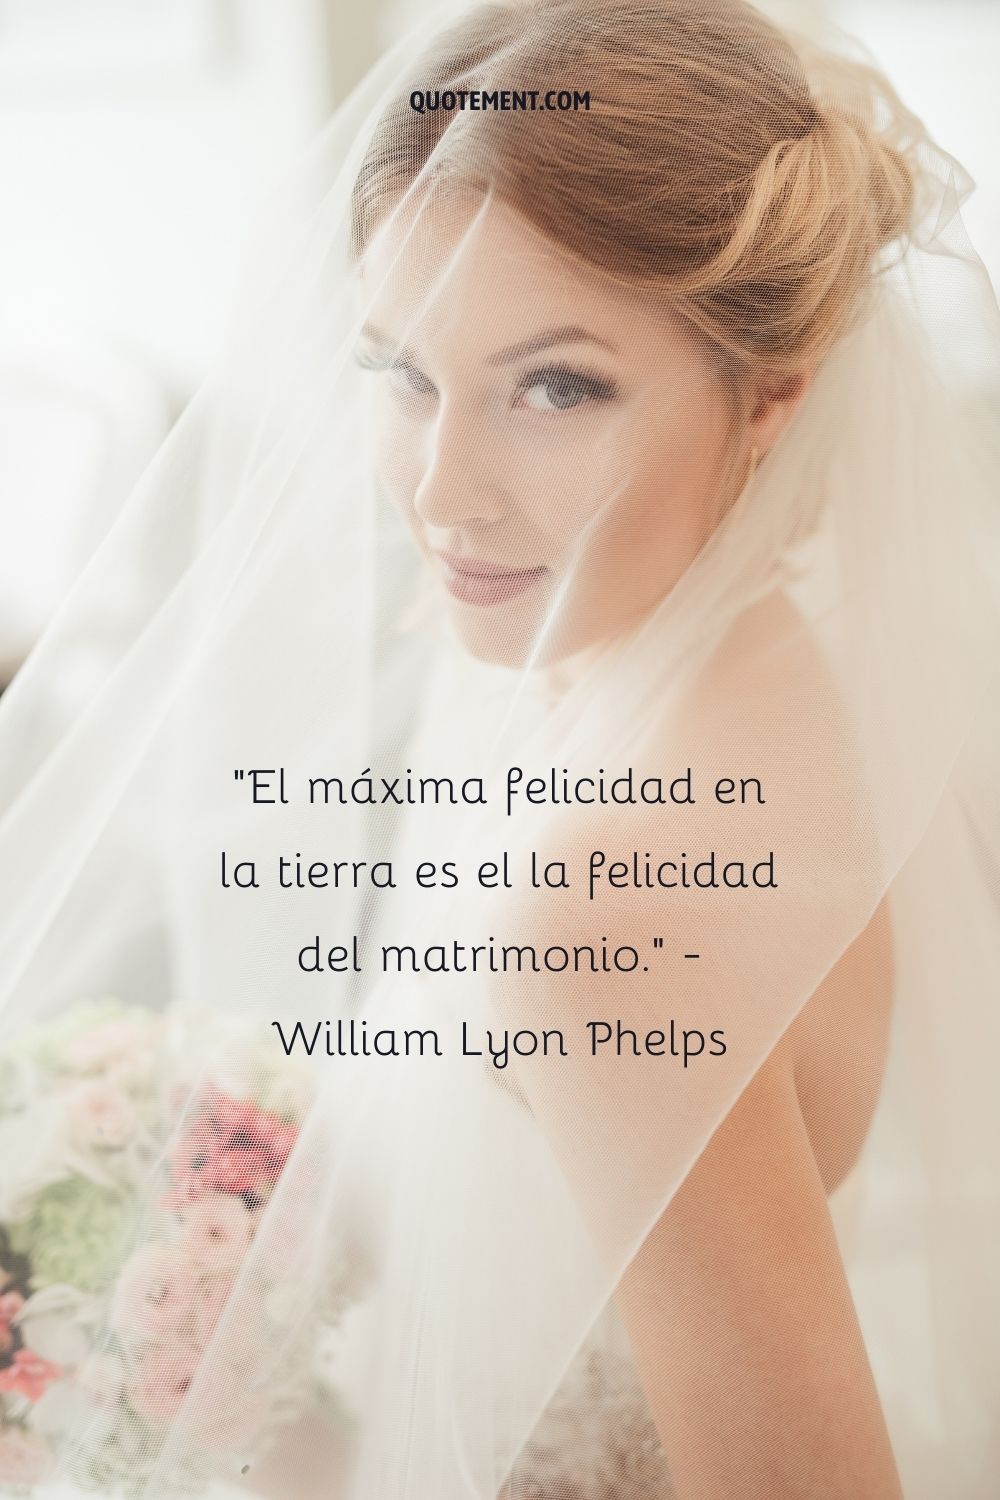 La mayor felicidad de la tierra es la felicidad del matrimonio. - William Lyon Phelps